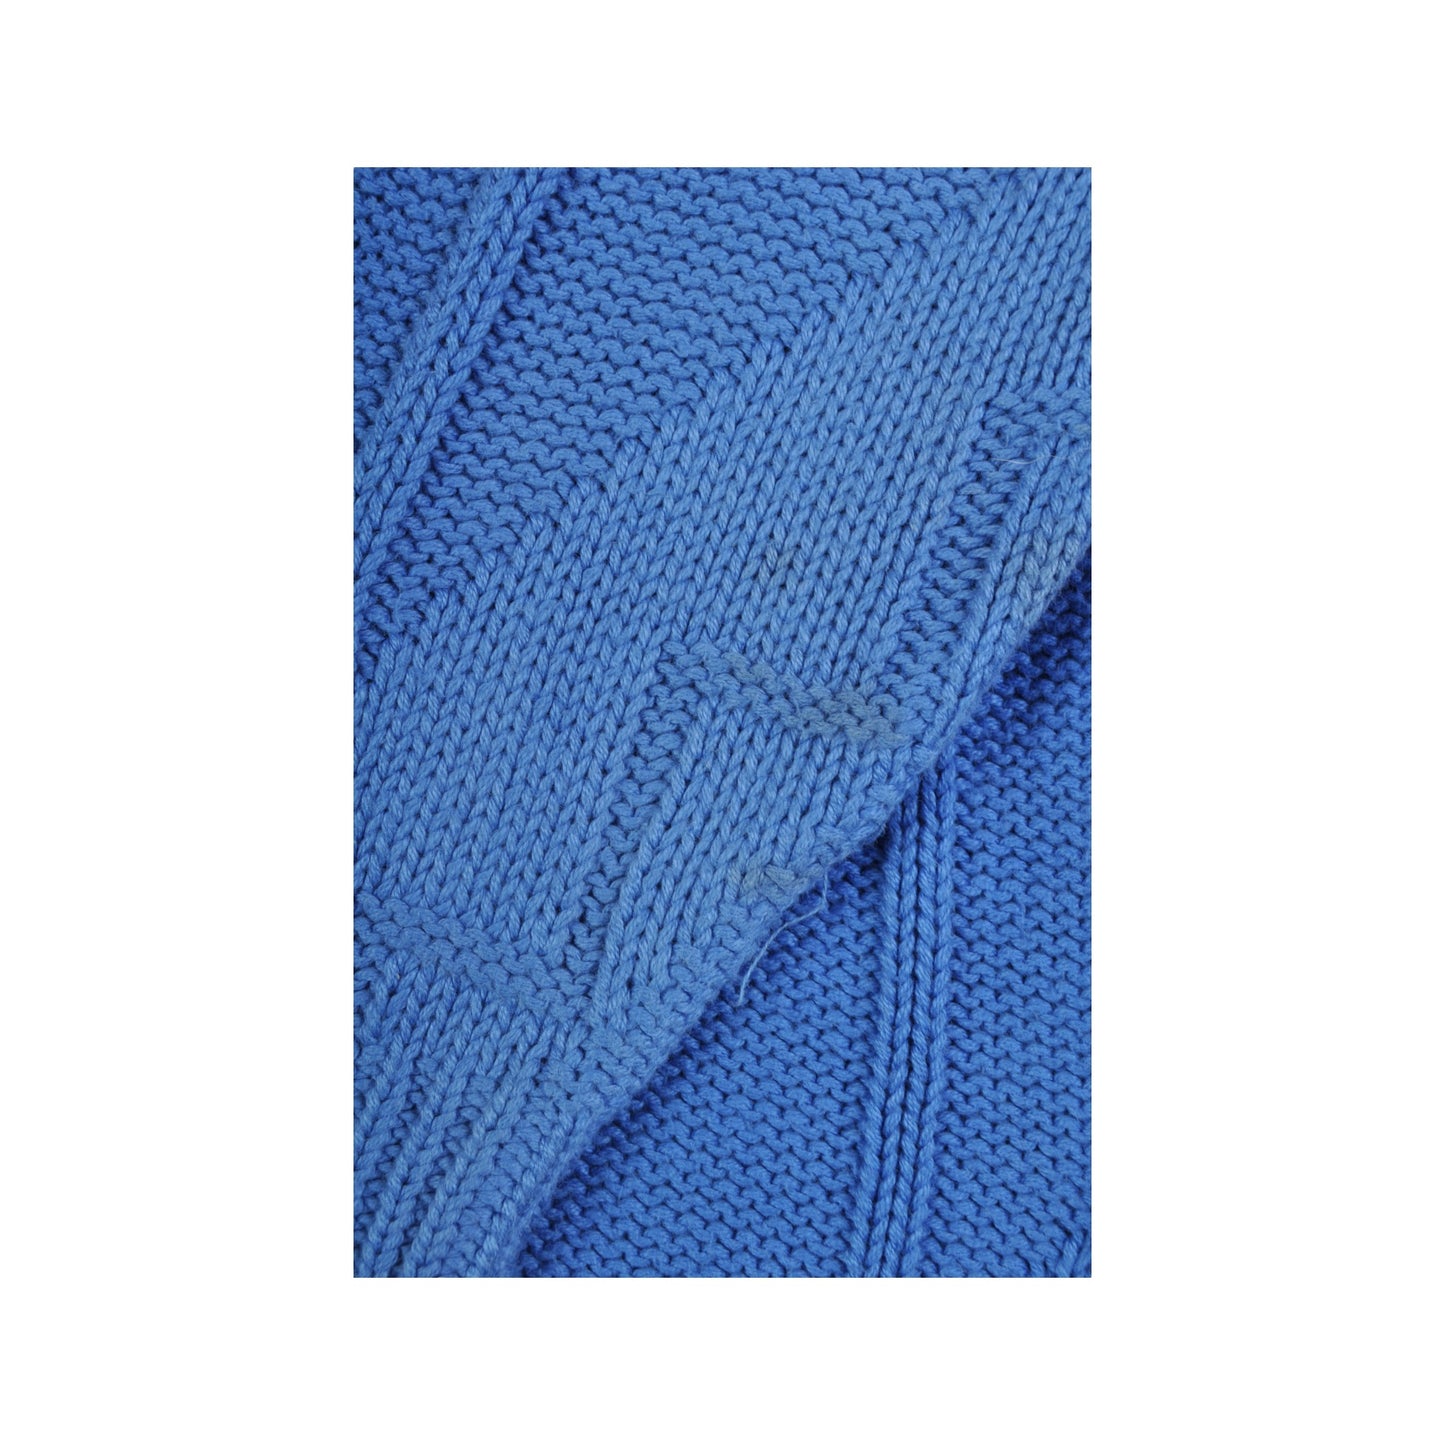 Vintage Knitwear Sweater Retro Pattern Blue Large